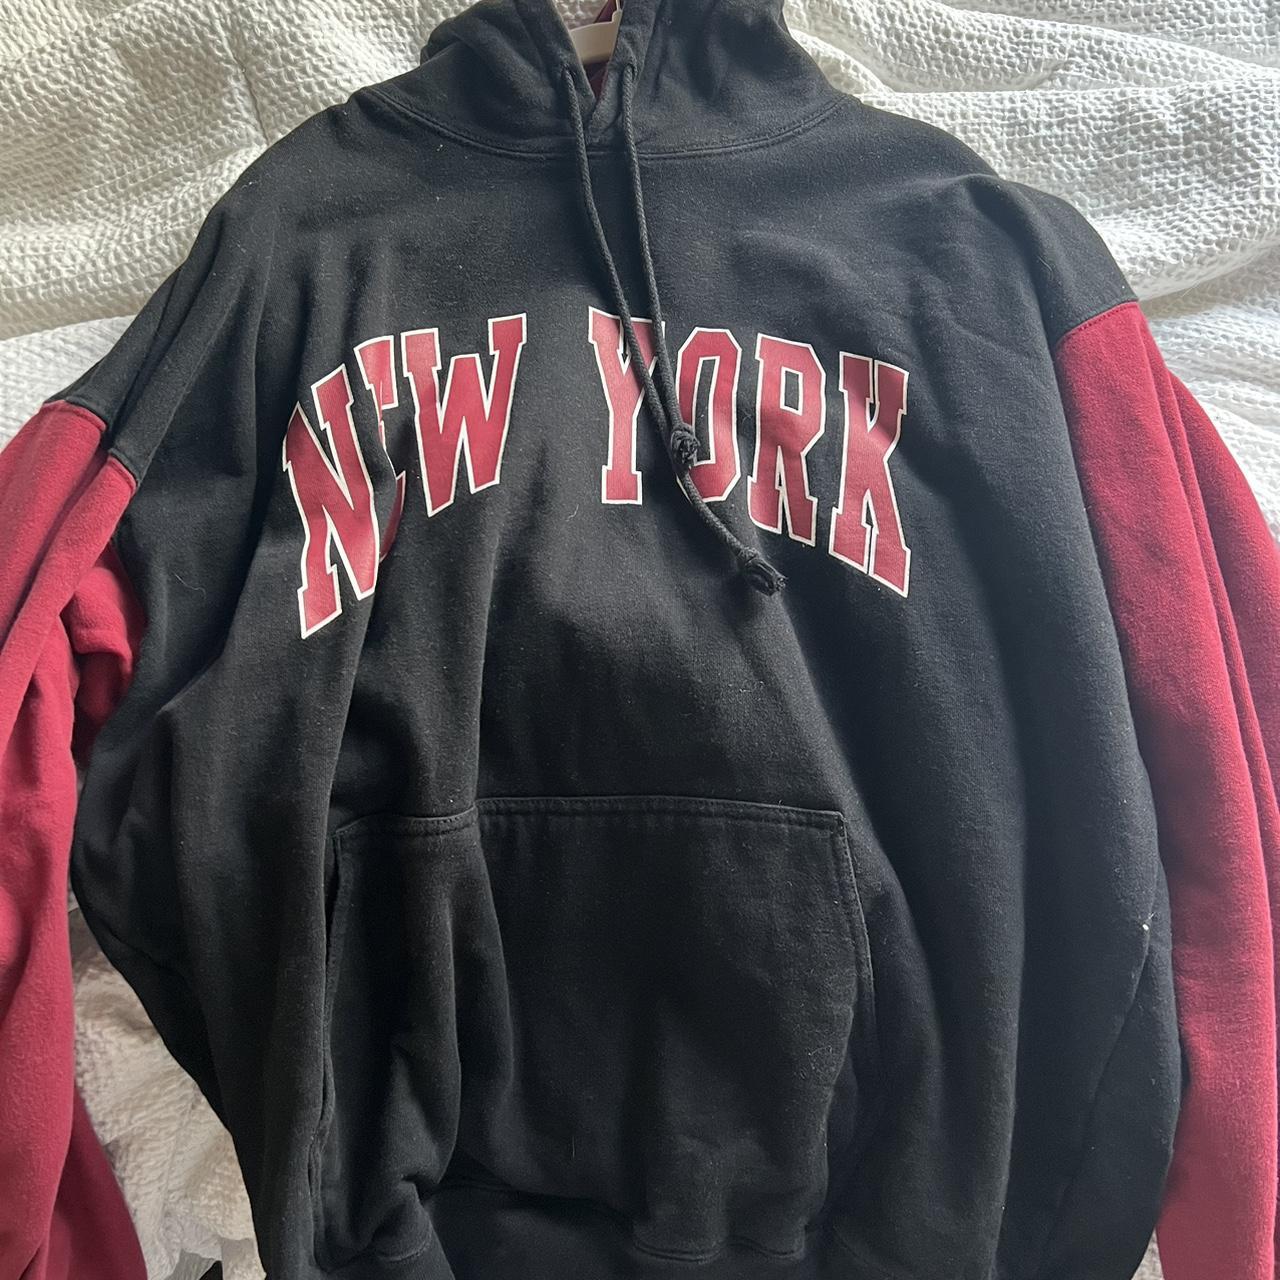 Brandy Melville “New York” hoodie. Classic black - Depop